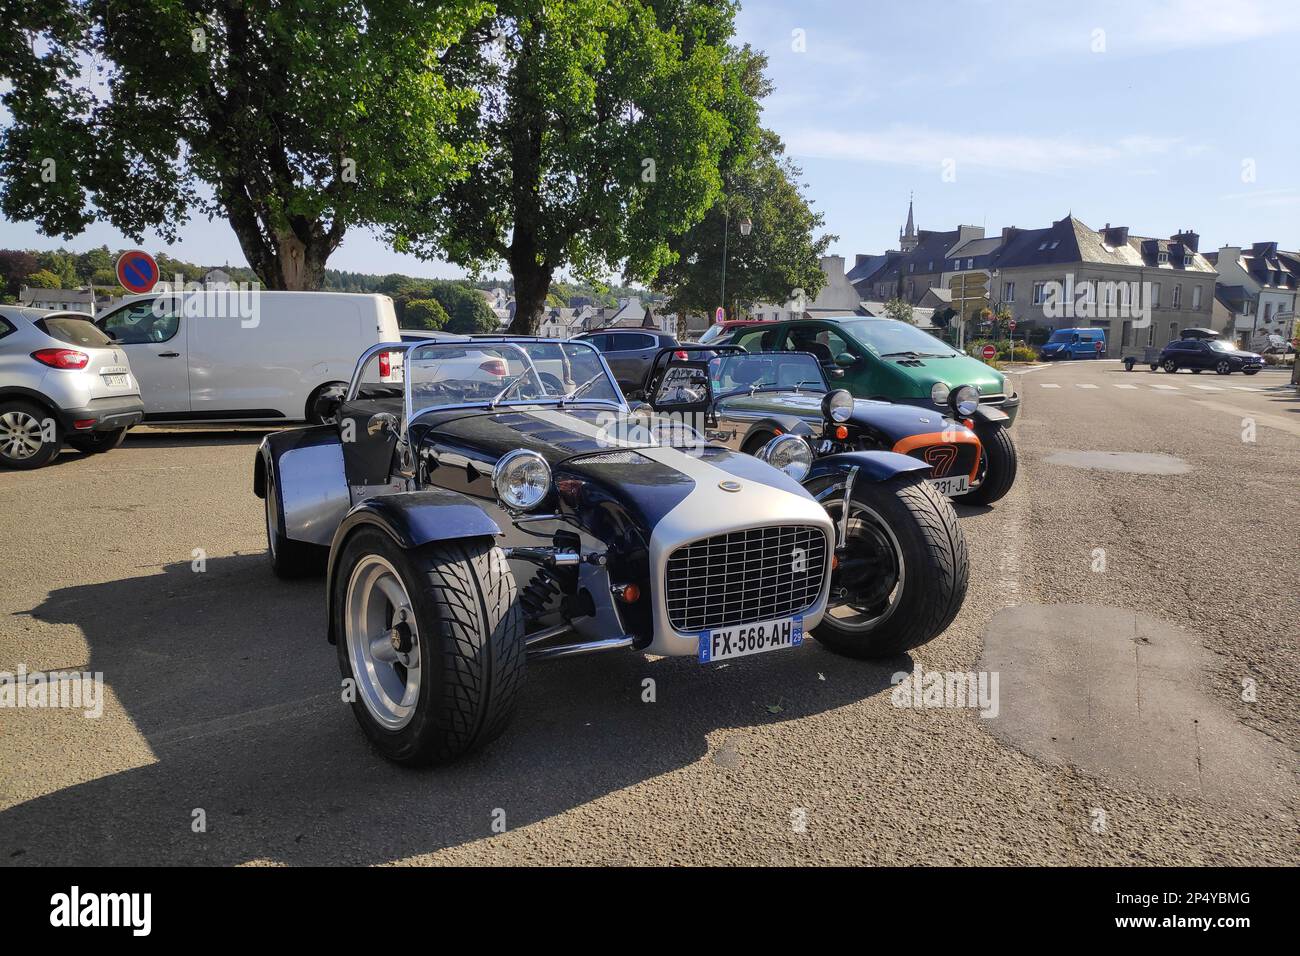 Huelgoat, France - 13 août 2022: Le Caterham 7 est une voiture de sport ultra-légère produite par Caterham Cars au Royaume-Uni. Banque D'Images